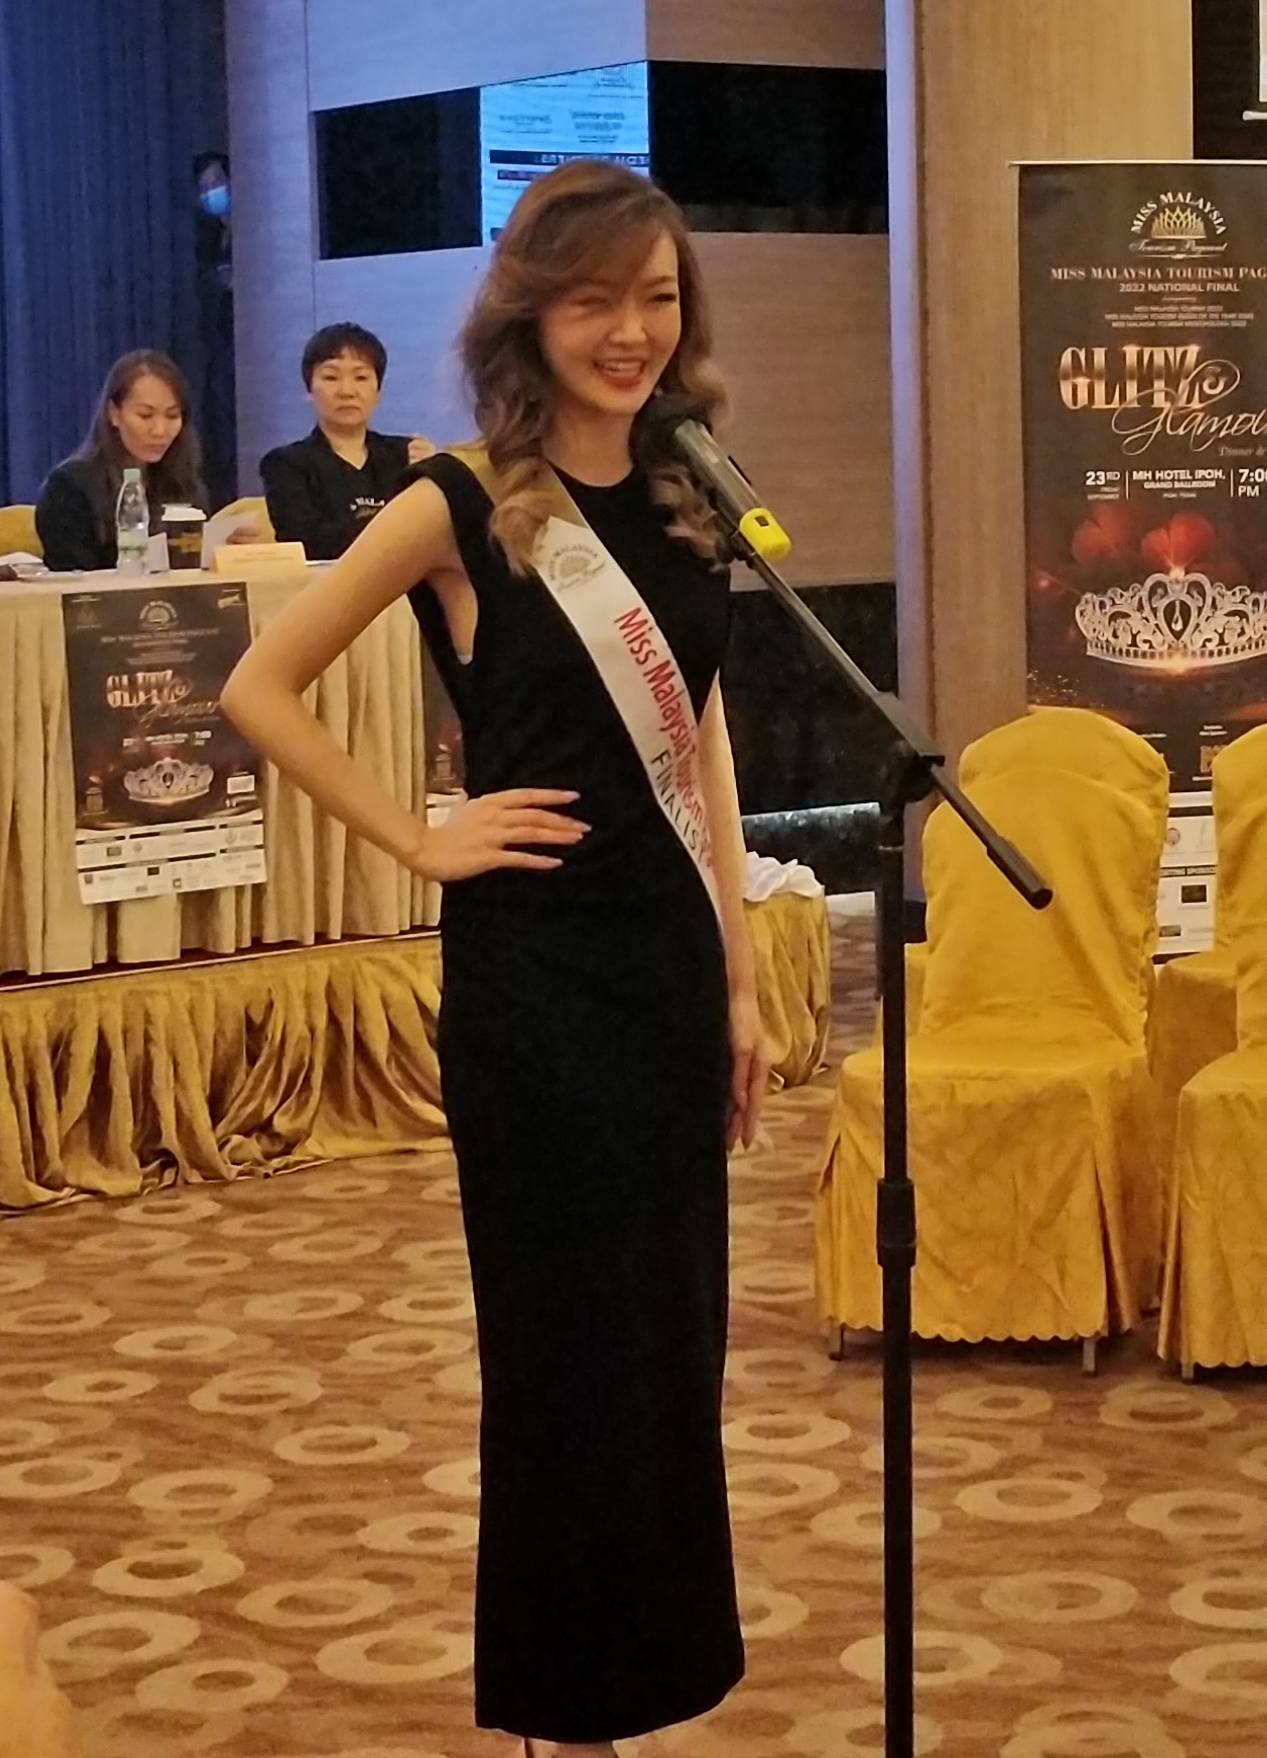 霹：封底主文／18名全国佳丽代表 本周五竞夺“马来西亚旅游小姐”头衔